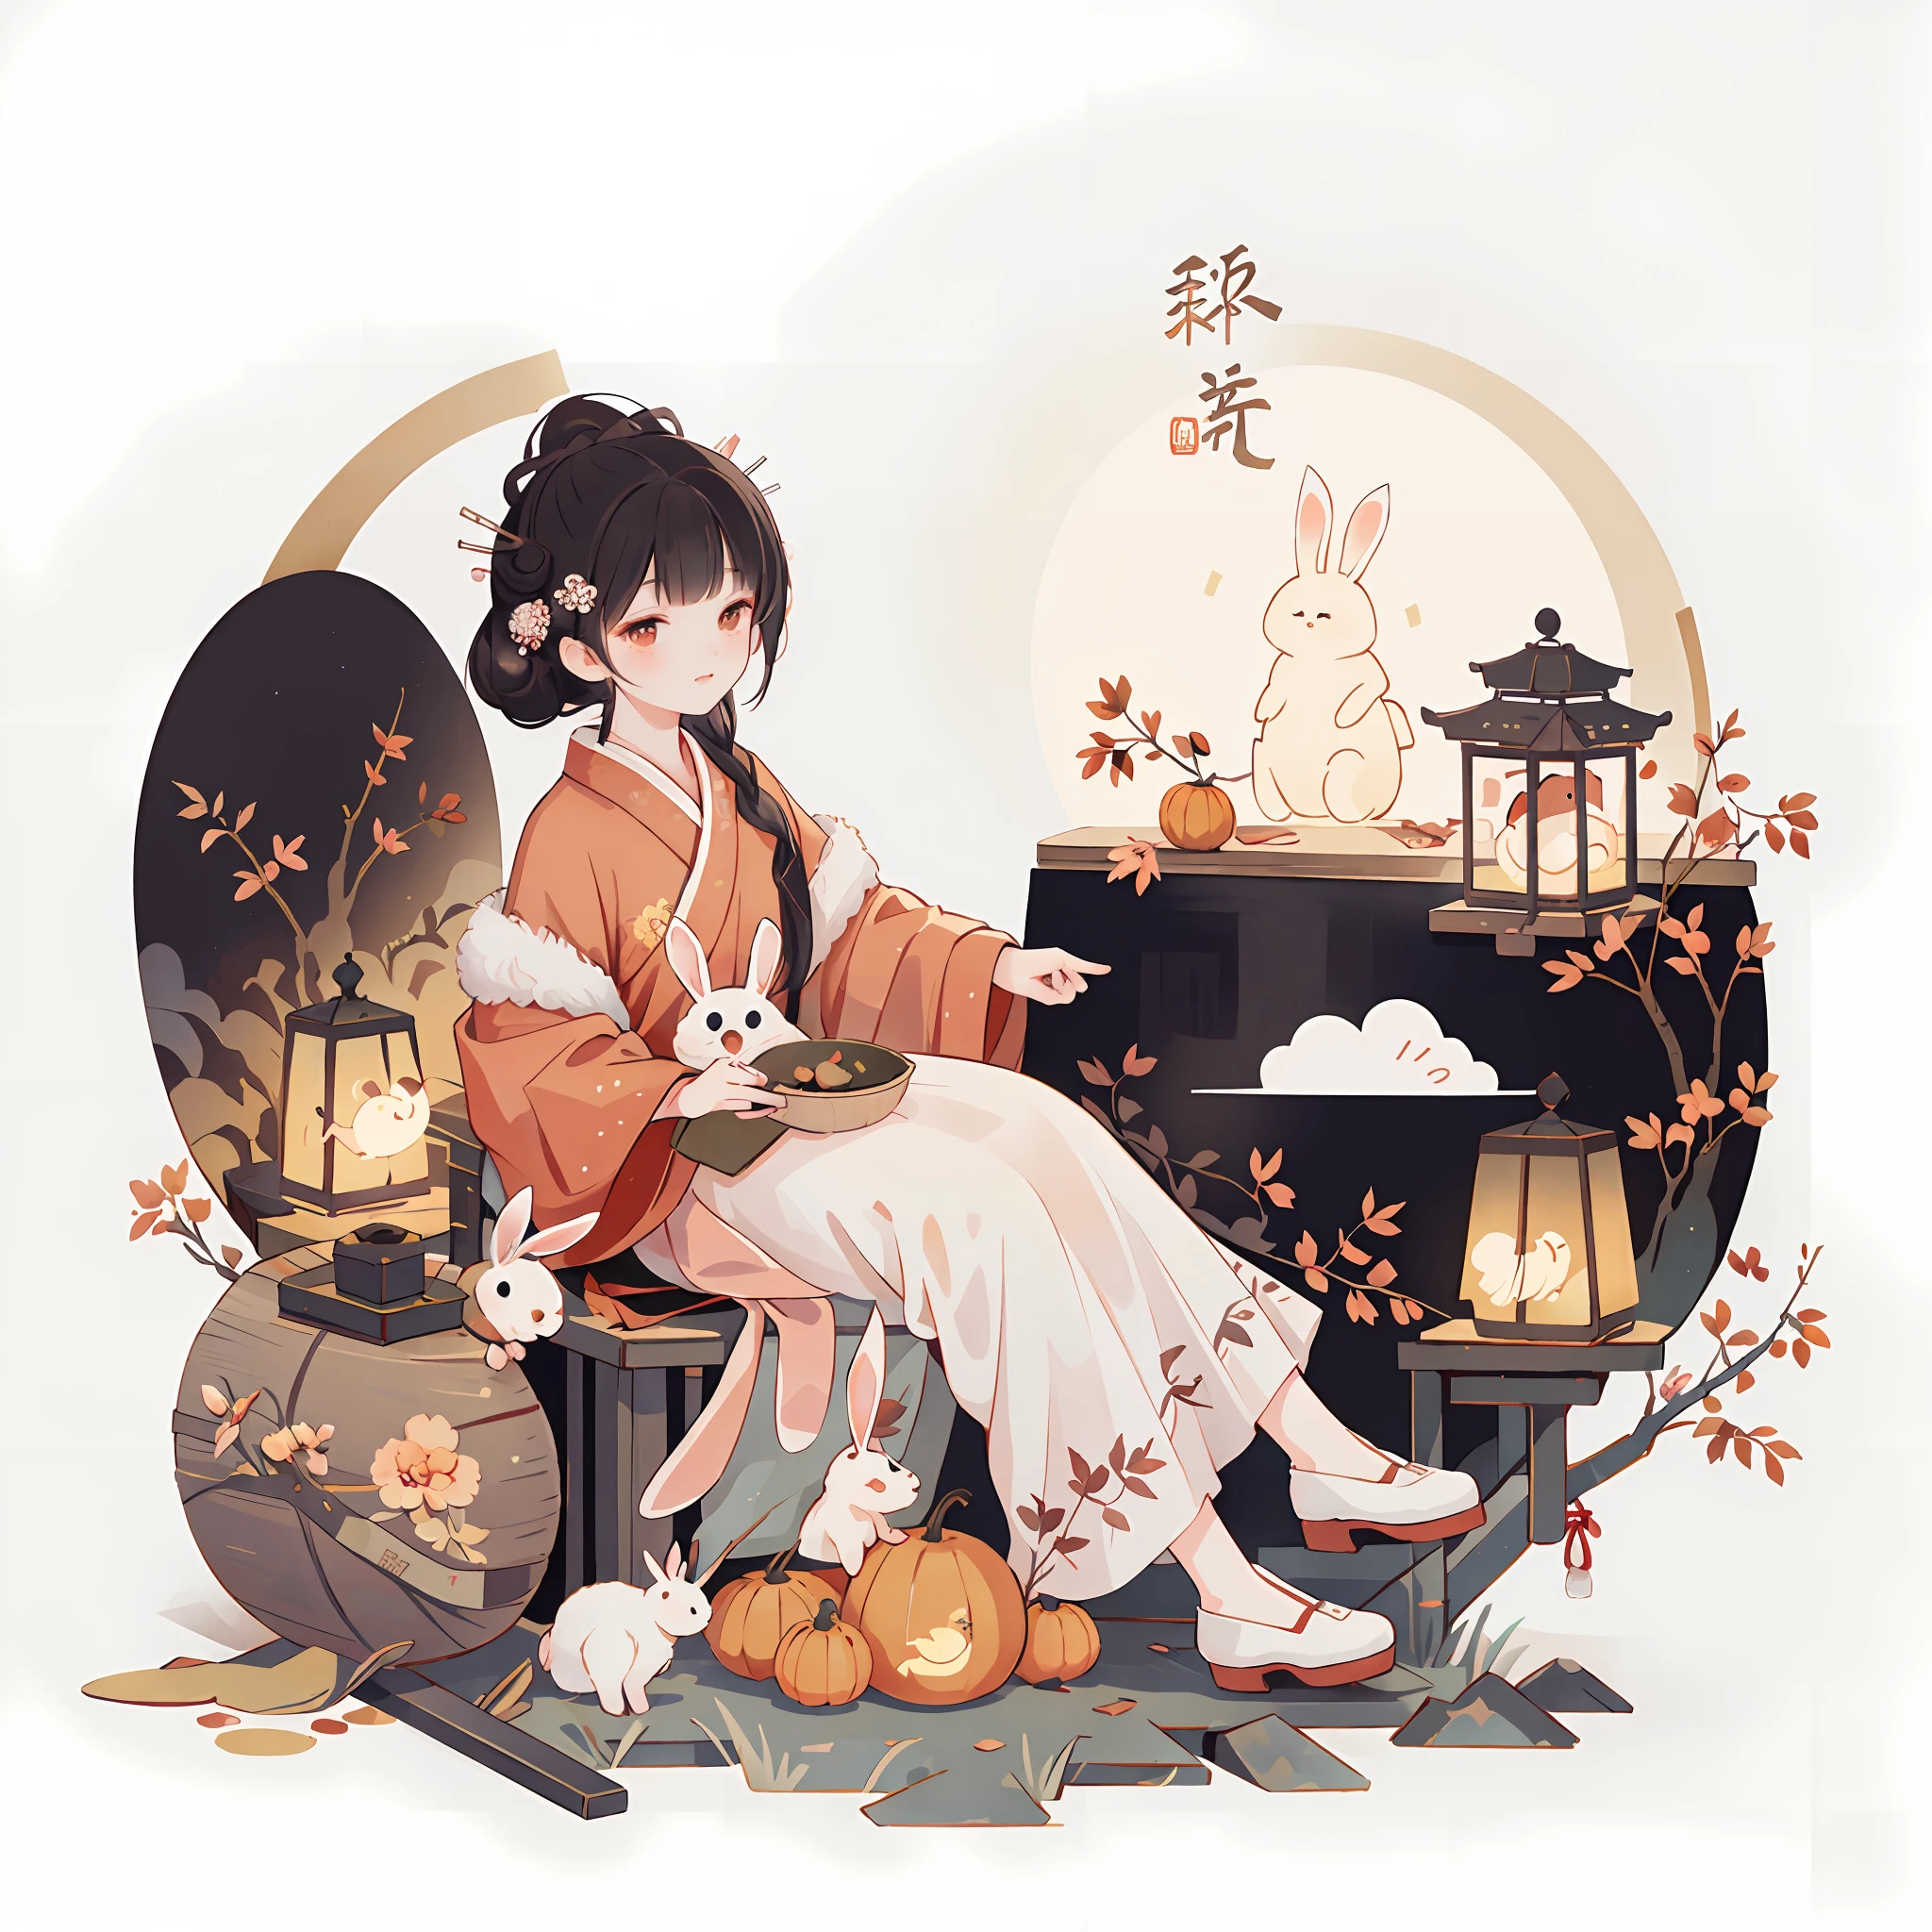 （一隻兔子：1.4）, 坐在地上, 抬頭看, 中秋節氣氛, 中國傳統插畫風格, 數位藝術, 簡單的背景, 白色背景上的傑作, 最好的品質, 超詳細, 高品質, 4k